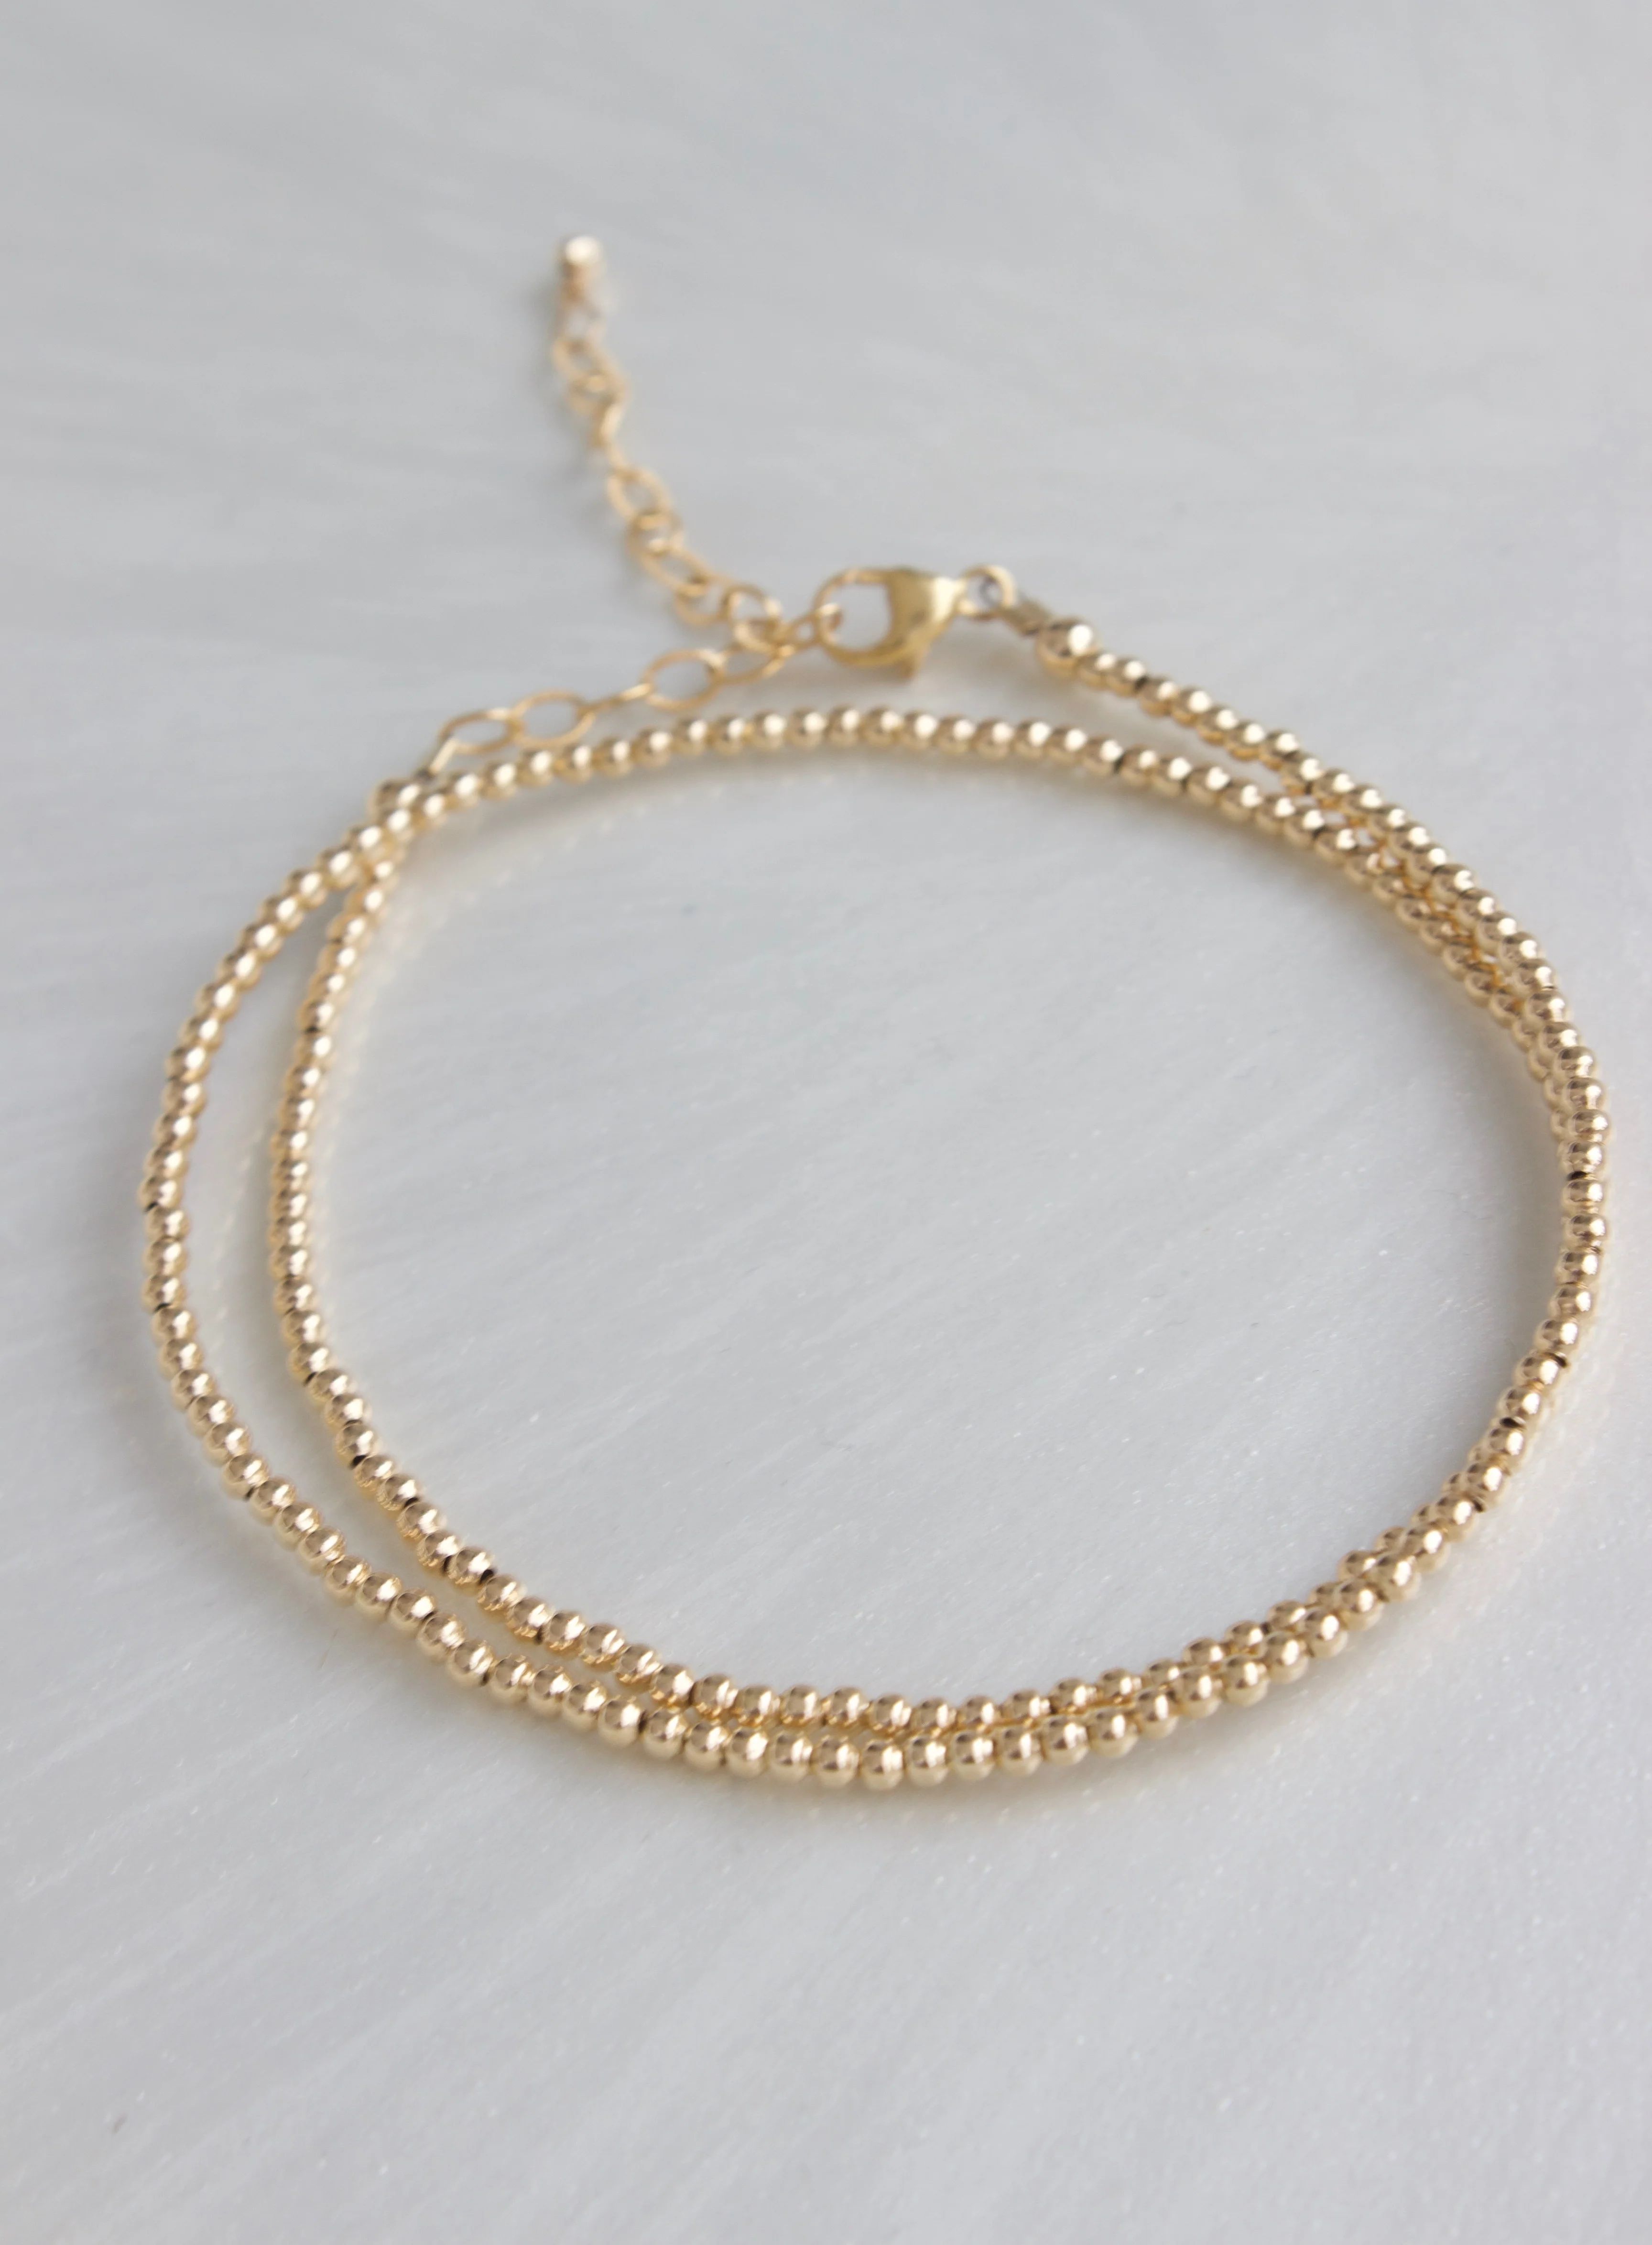 GOLD FILLED DOUBLE WRAP BRACELET | Katie Waltman Jewelry